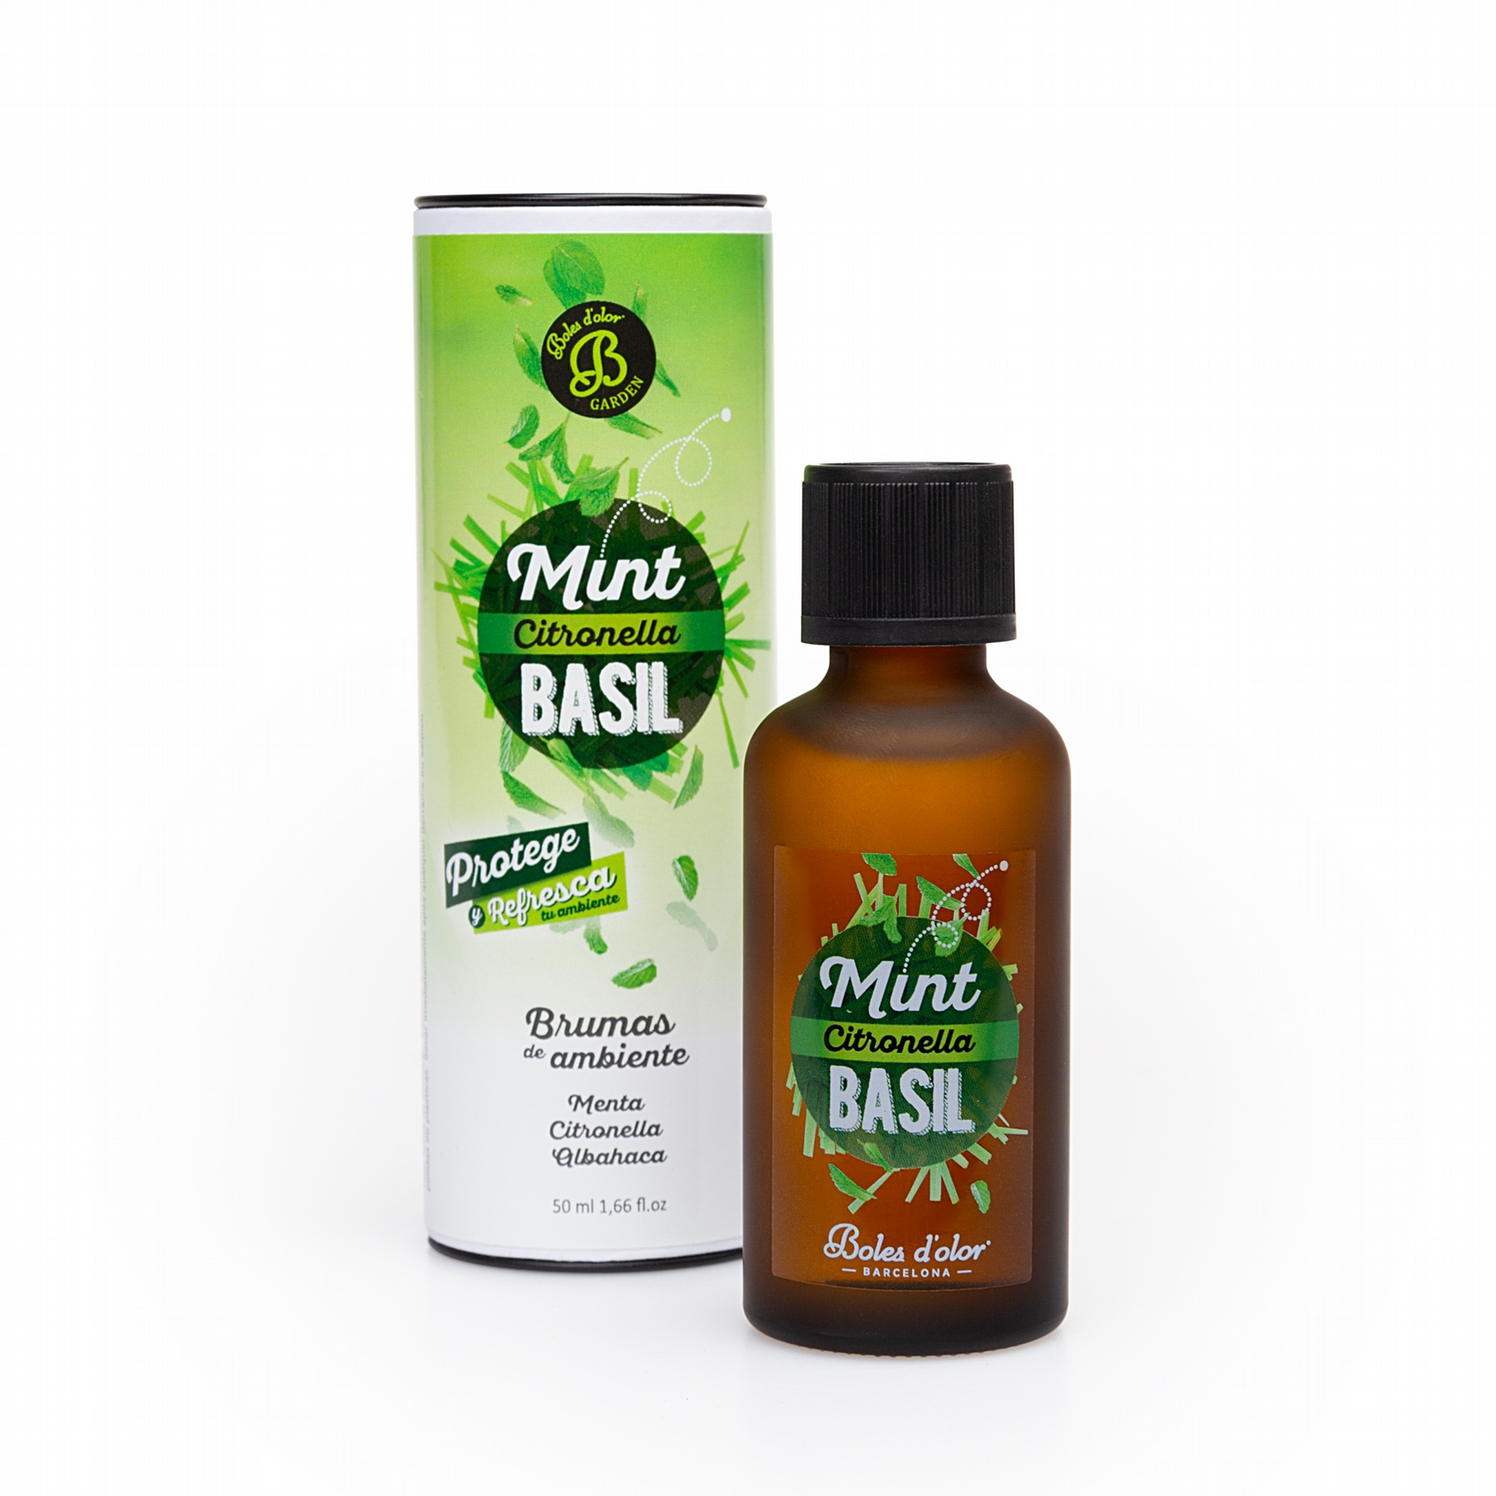 Boles d'olor Olive (Huile d'Olive) Brumas de Ambiente Essence (50ml) by Boles  d'olor Fragrance Mist Oils & Mist Diffusers